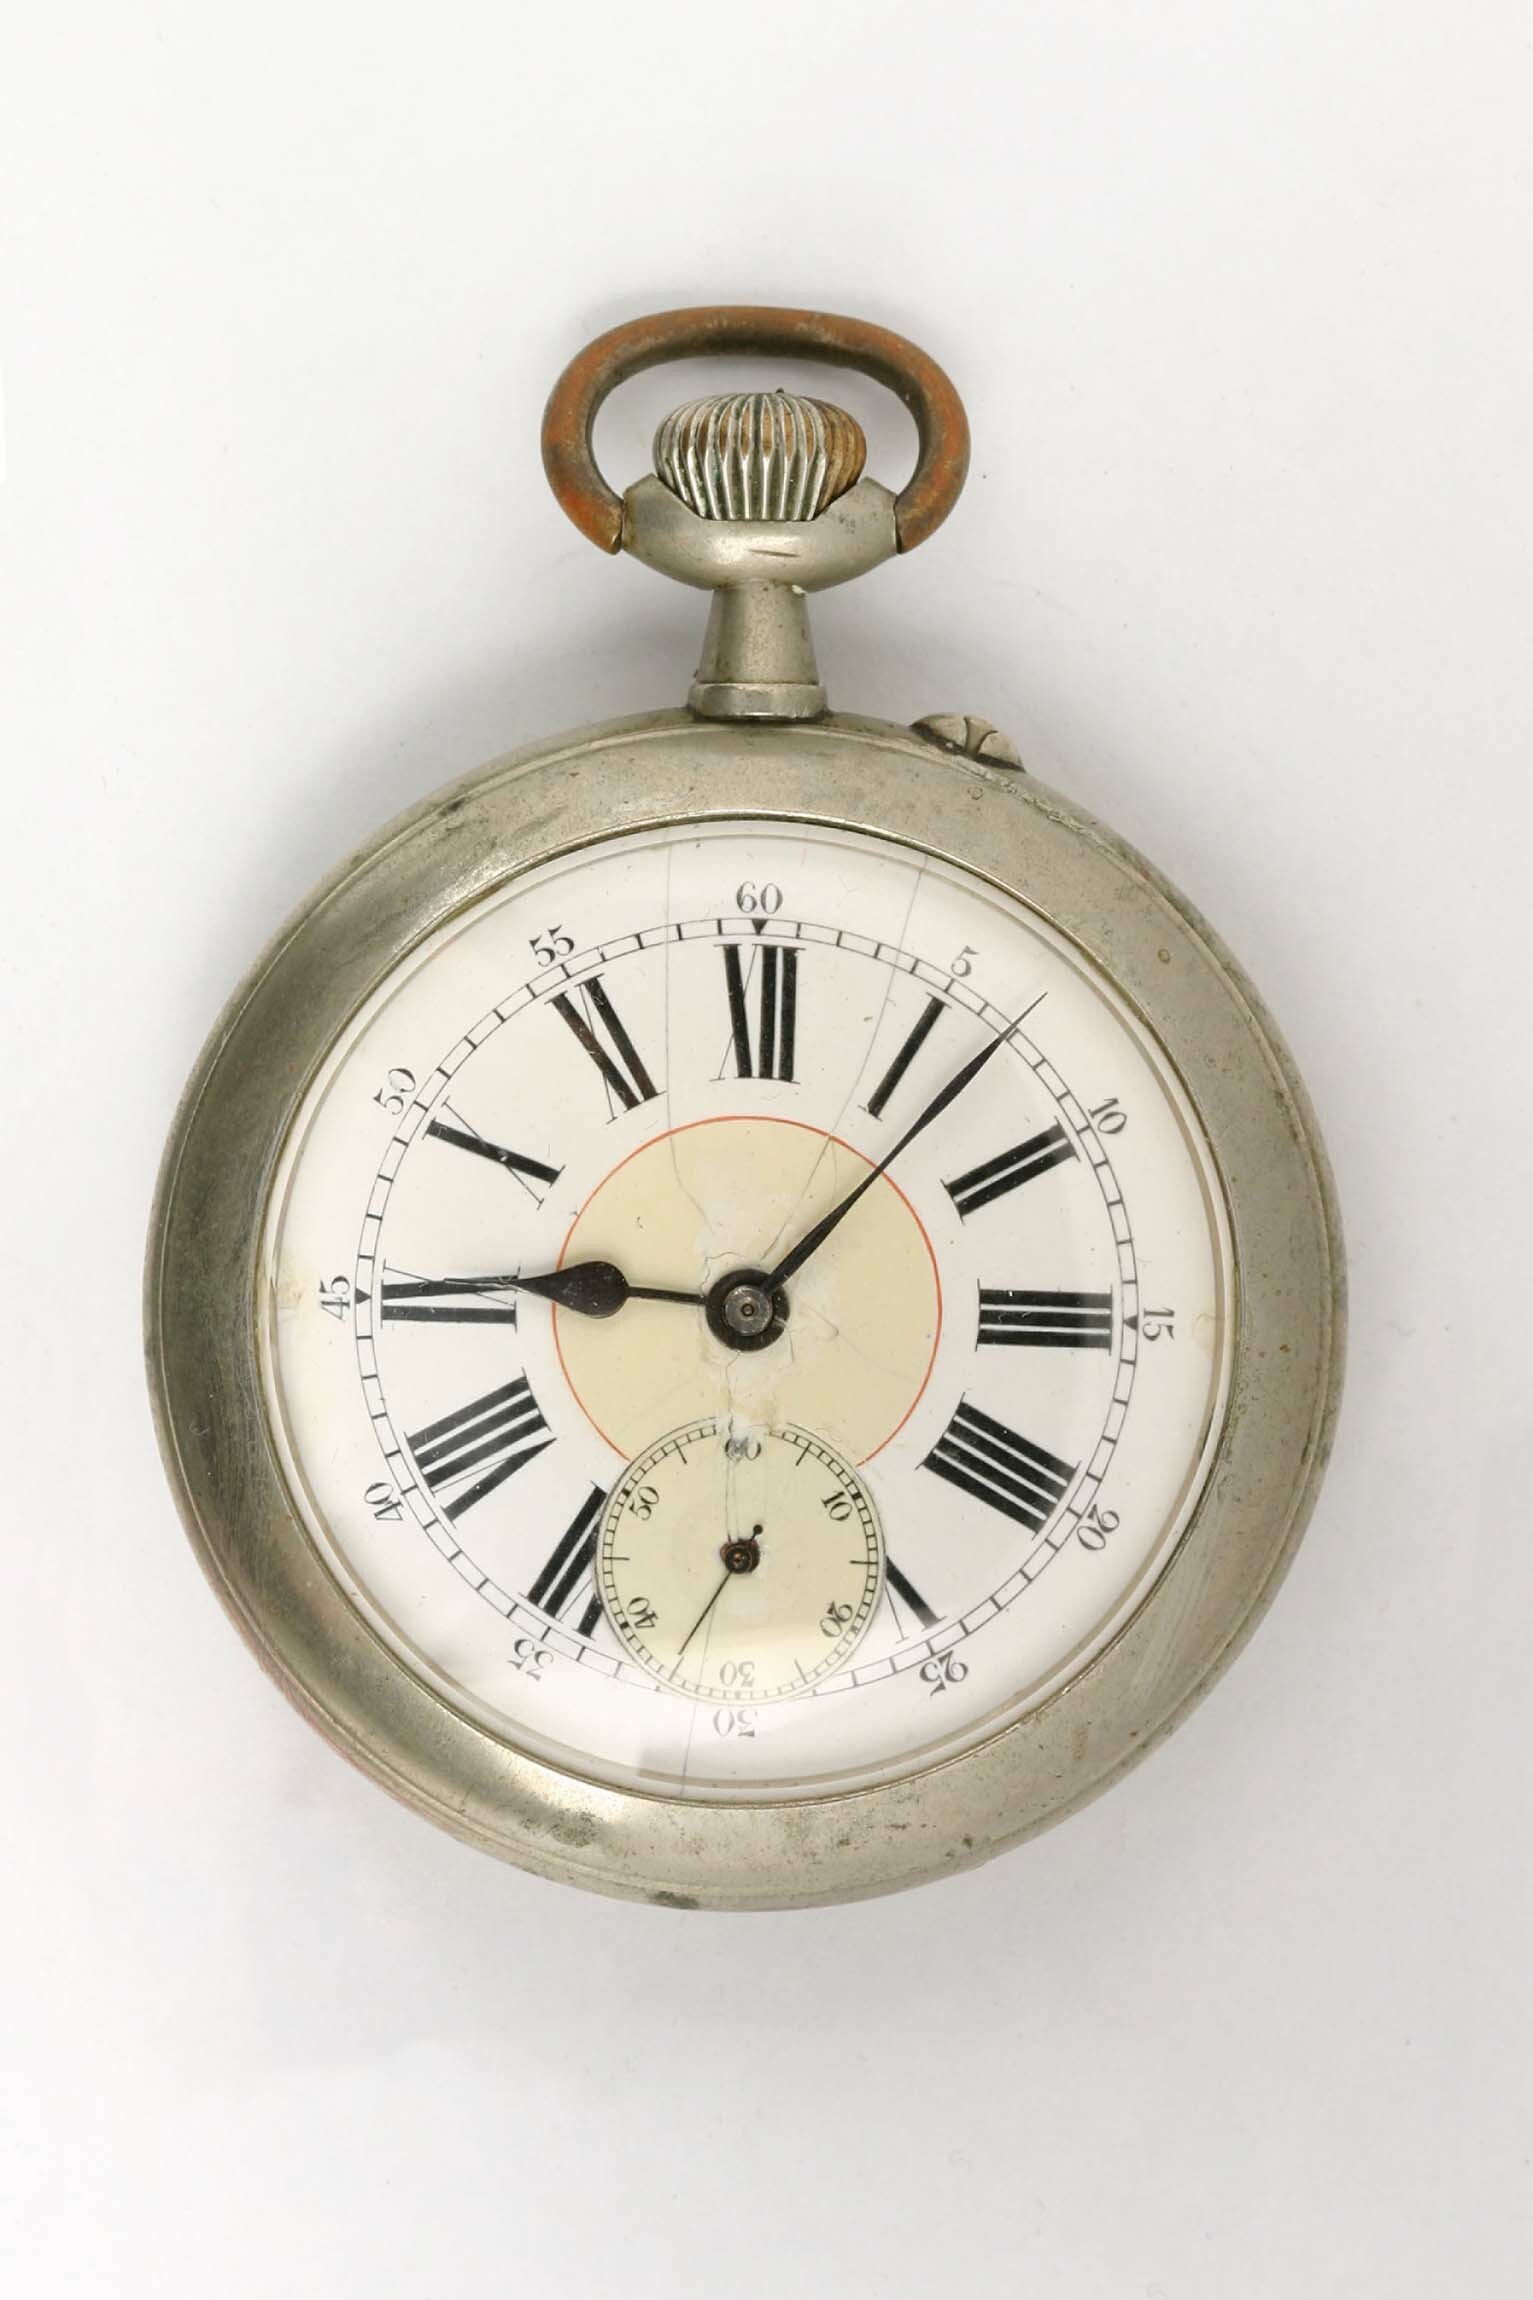 Taschenuhr, Doxa SA, Le Locle (Schweiz), um 1910 (Deutsches Uhrenmuseum CC BY-SA)